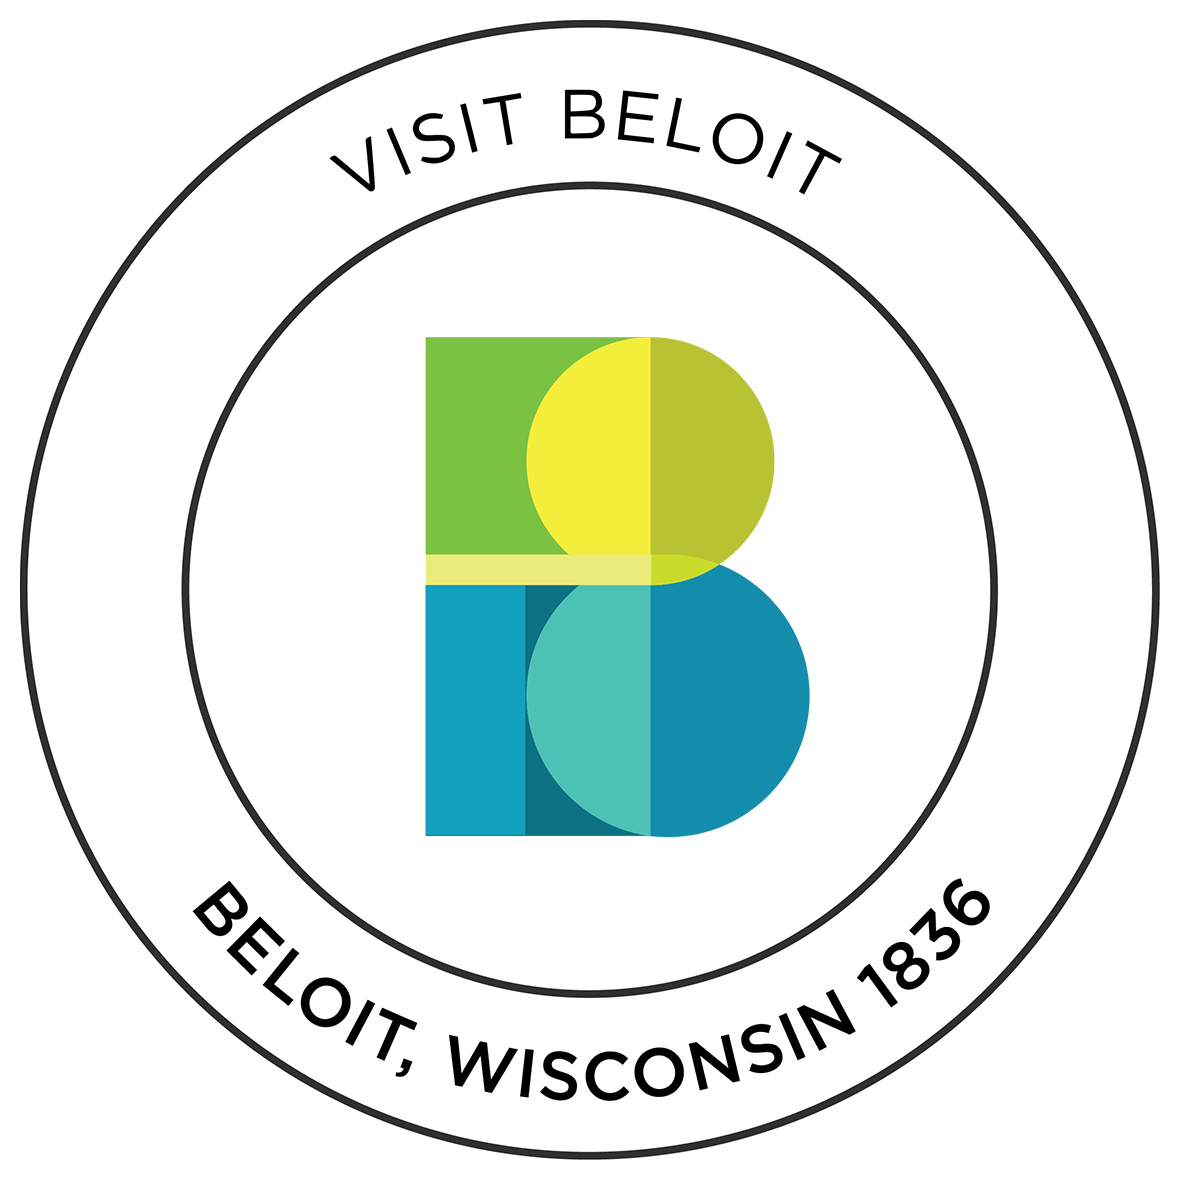 Visit Beloit Wisconsin